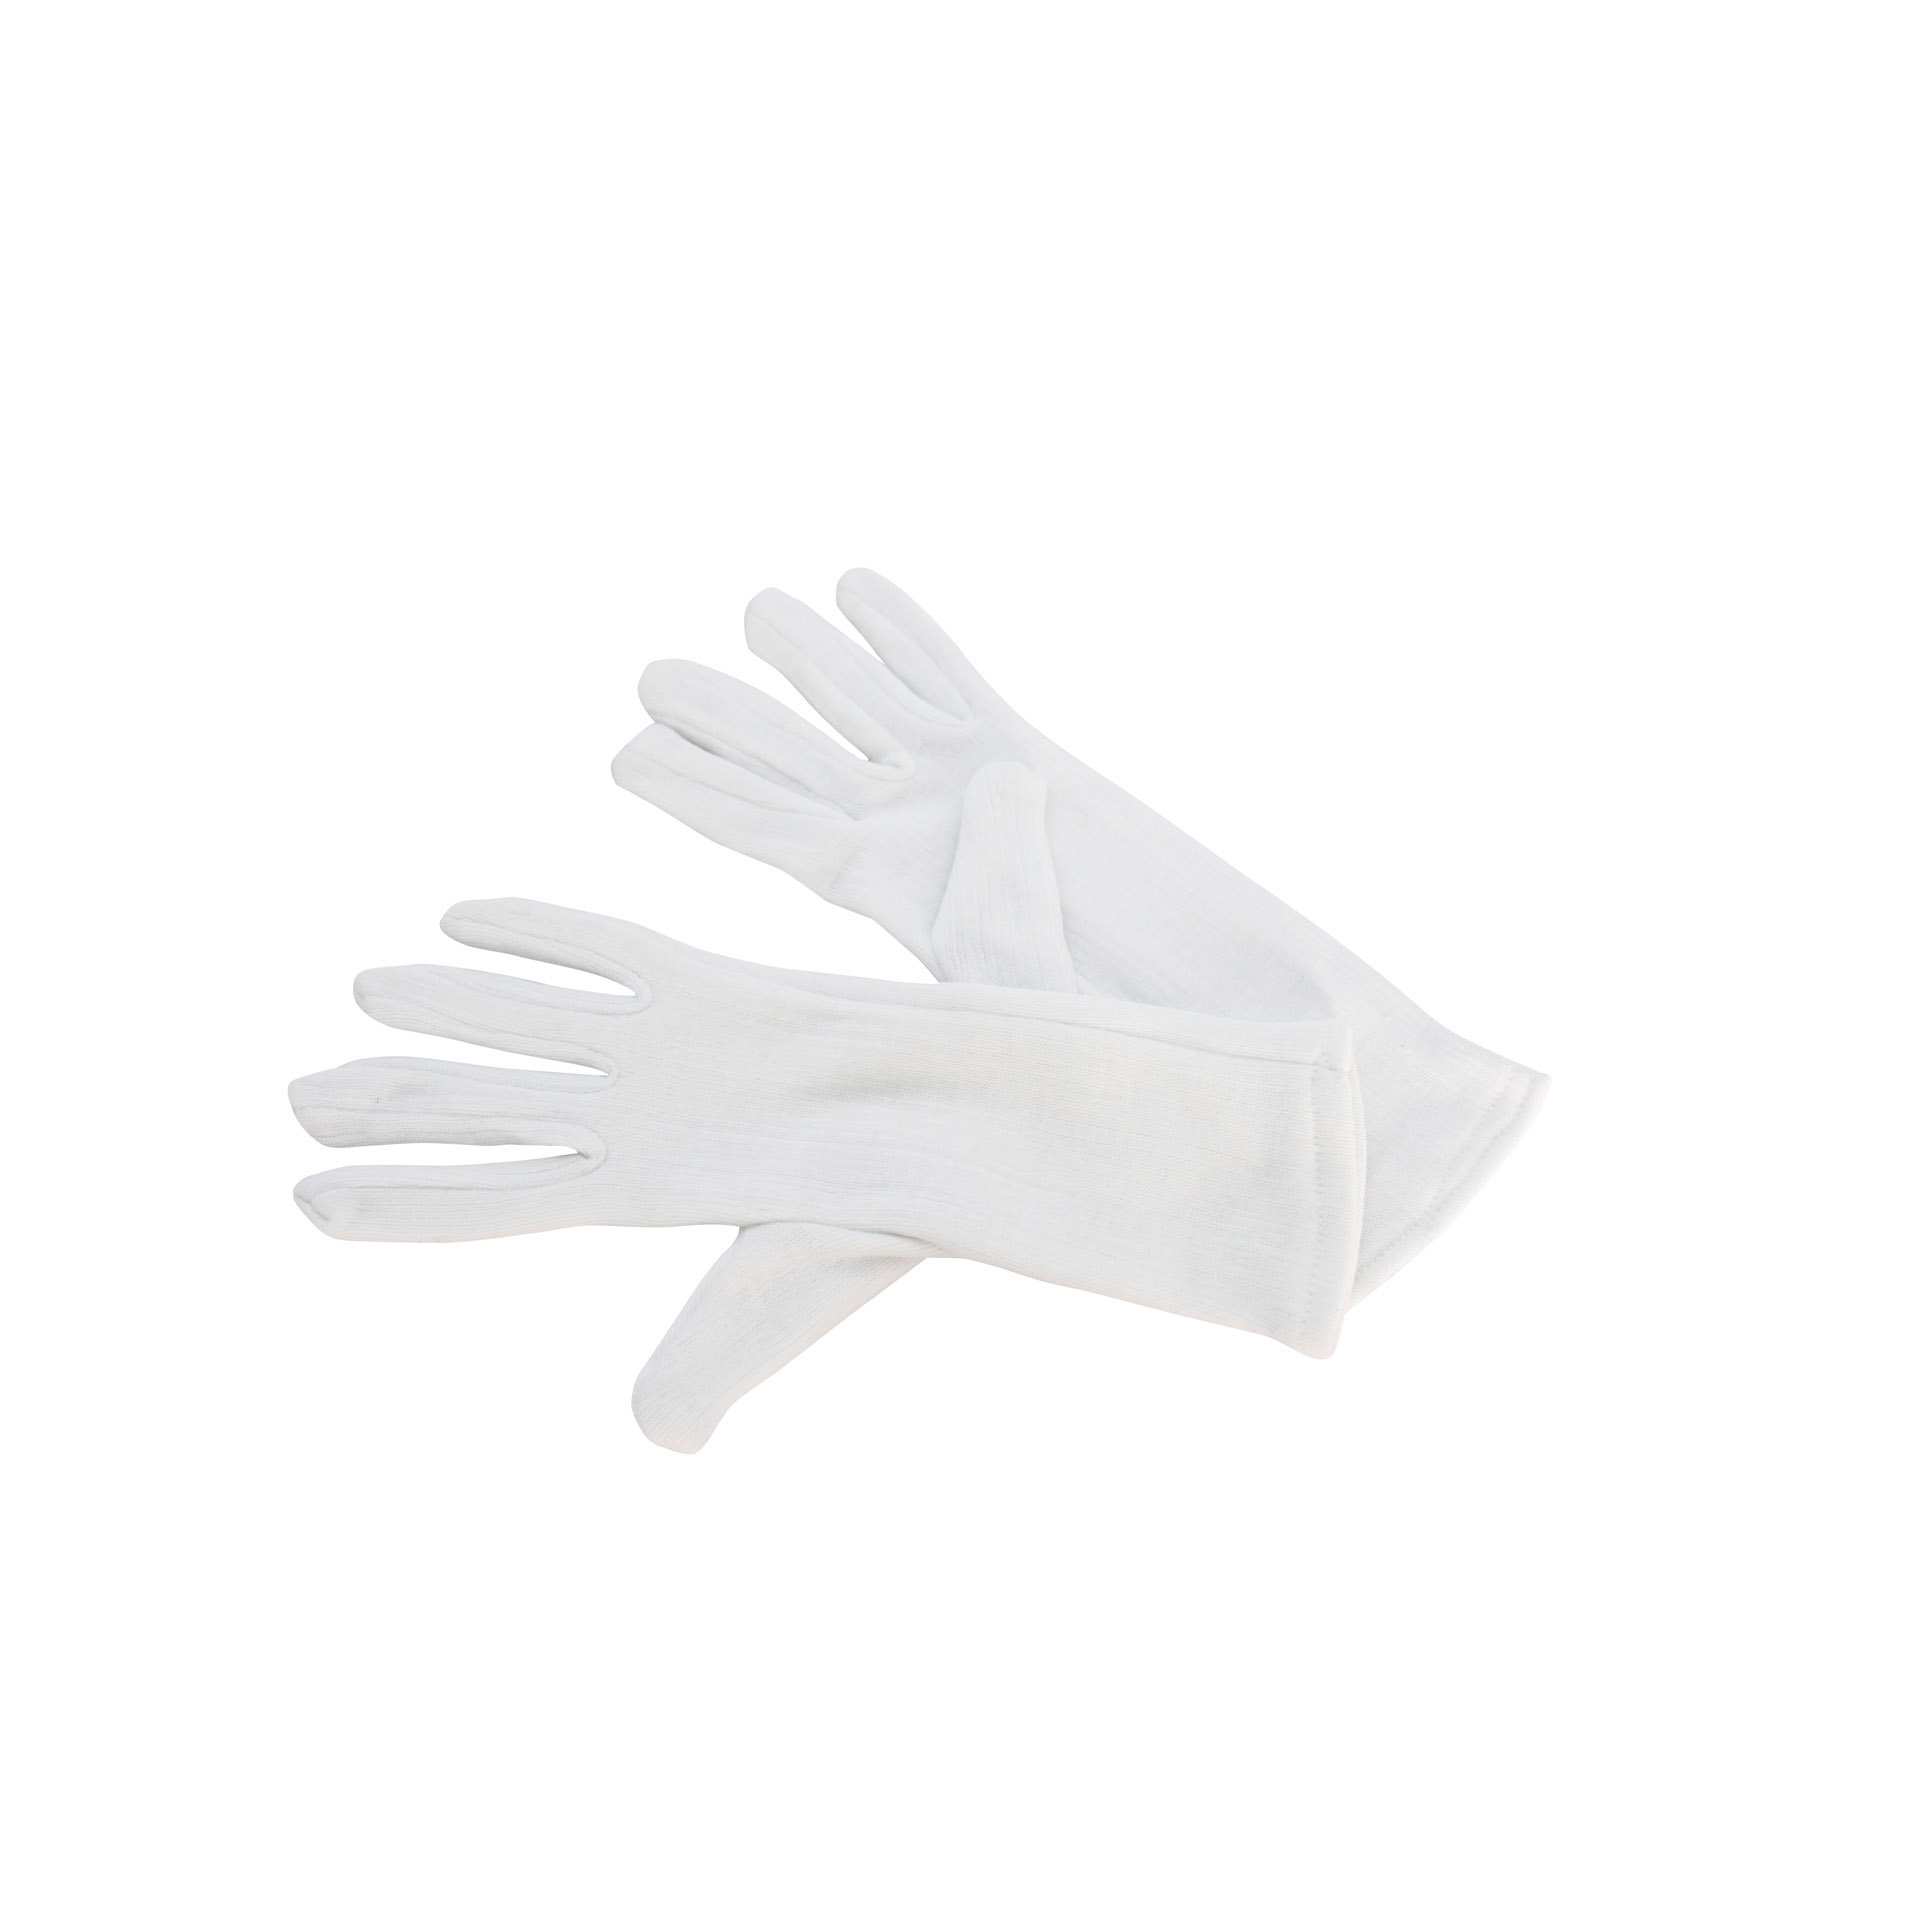 Fingerhandschuh - 5 Finger - weiß - Abm. 25,0 x 10,0 x 2,0 cm - Baumwolle - 310027-C